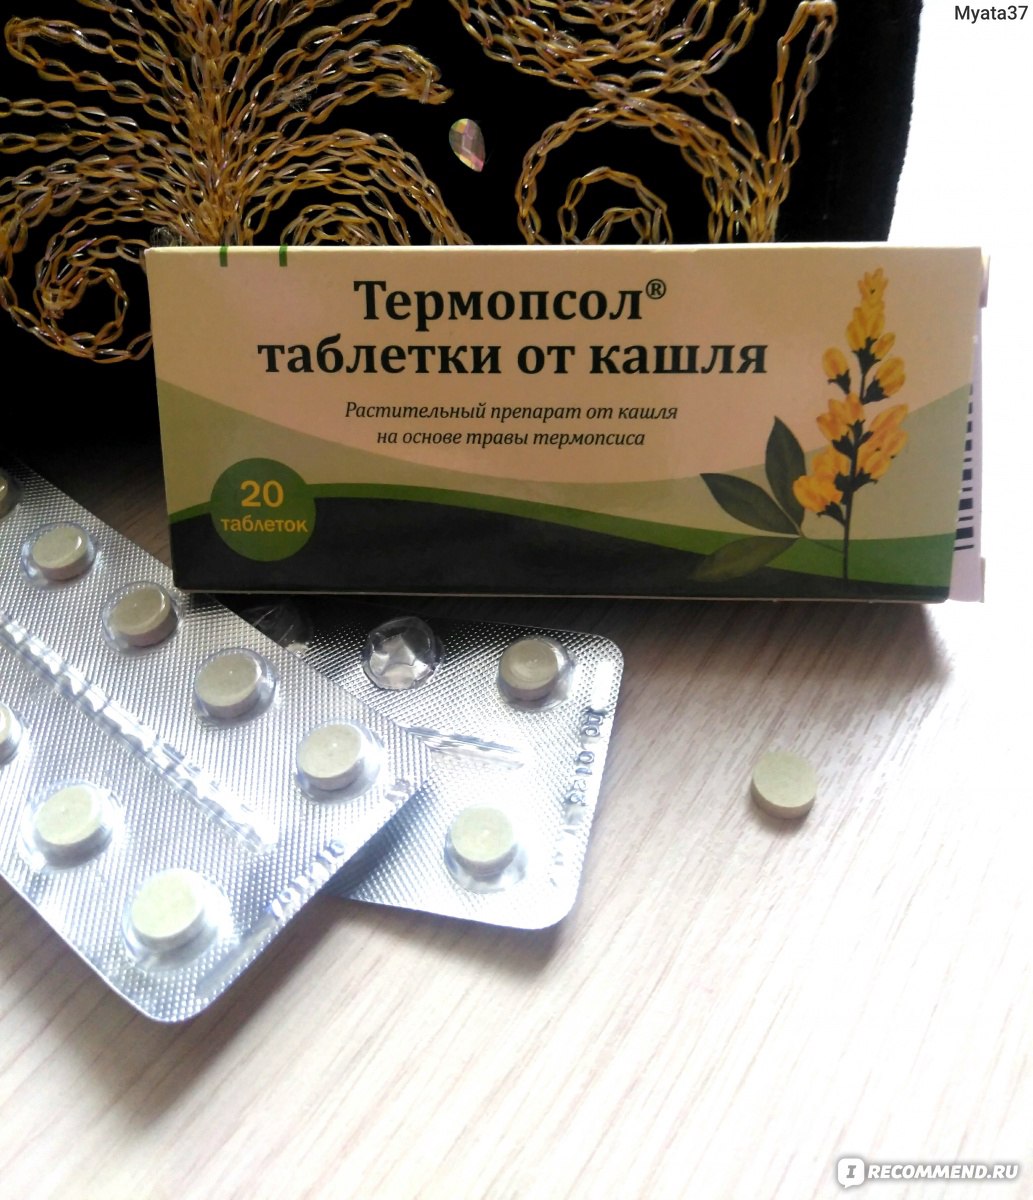 Как принимать таблетки термопсис